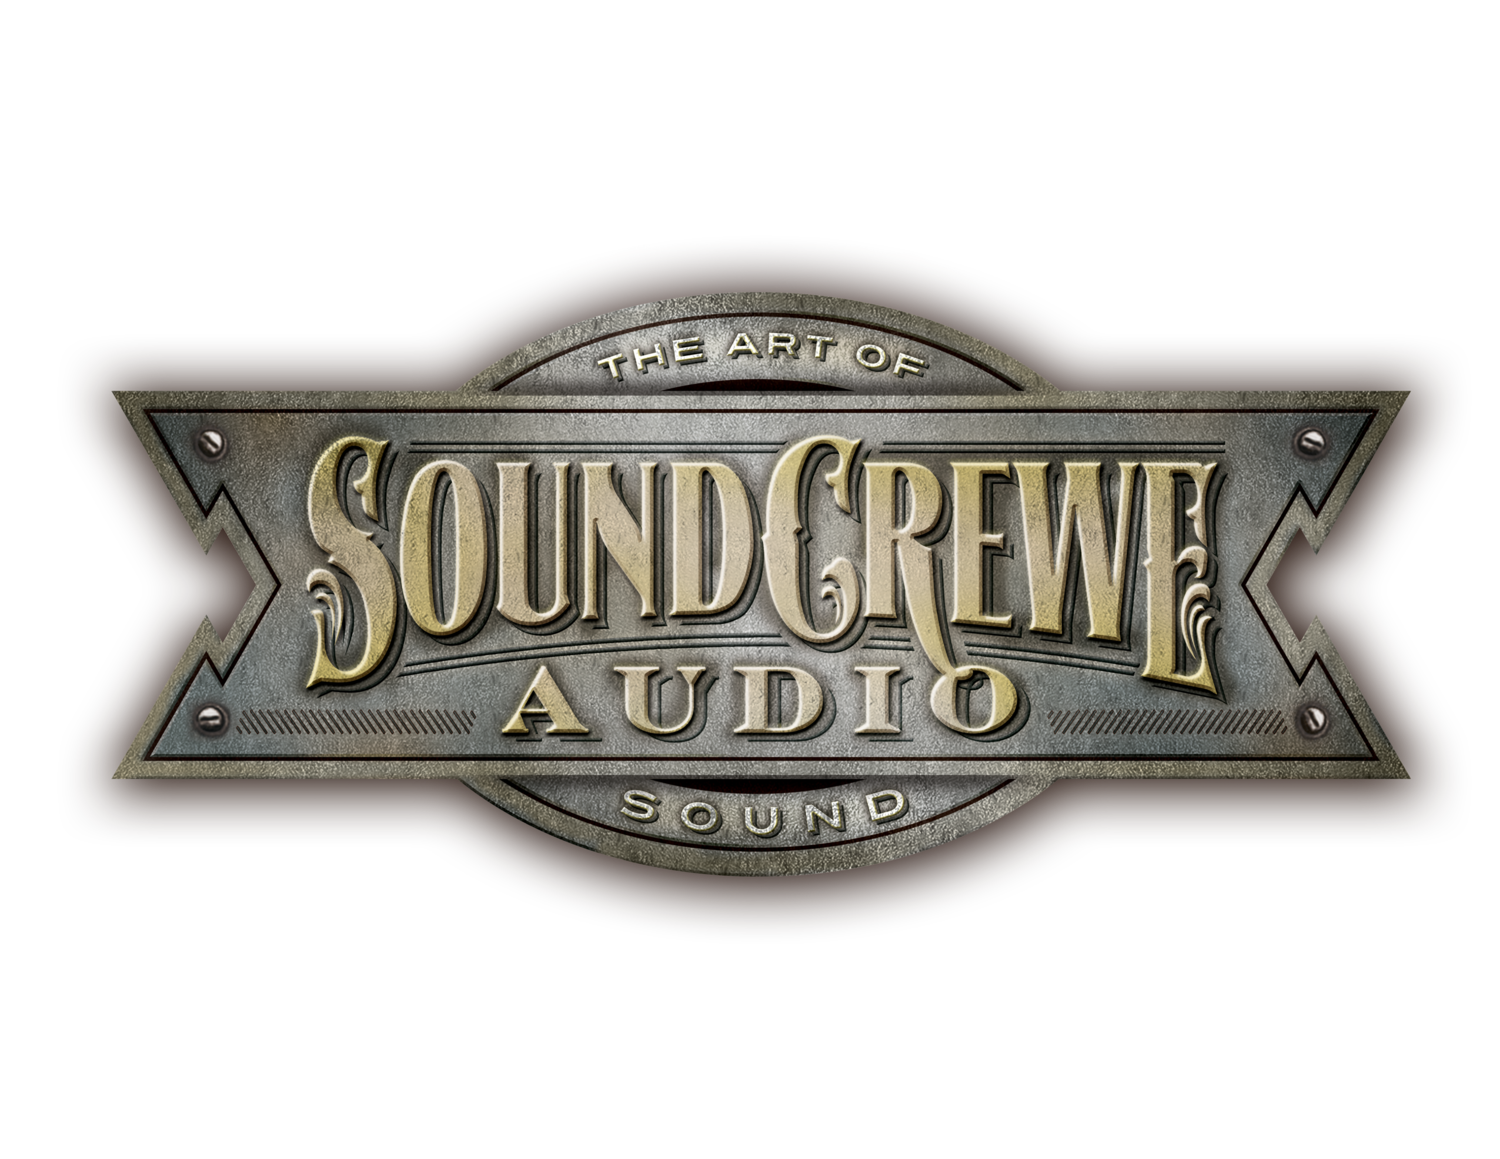 SoundCrewe